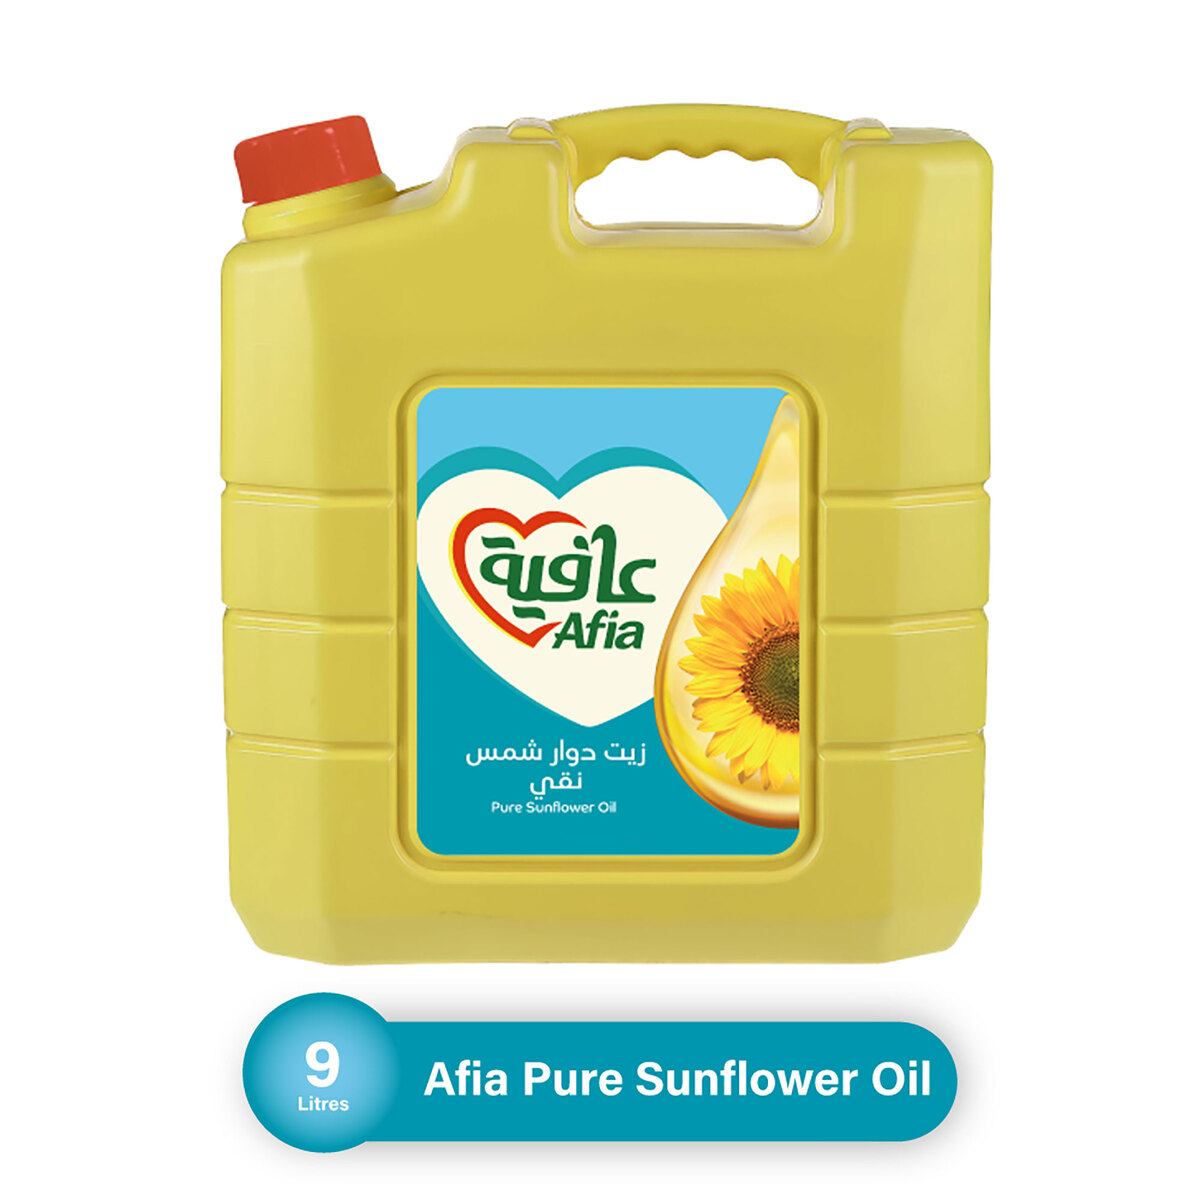 Afia Pure Sunflower Oil, Enriched with Vitamins A, D & Zinc, 9 Litres